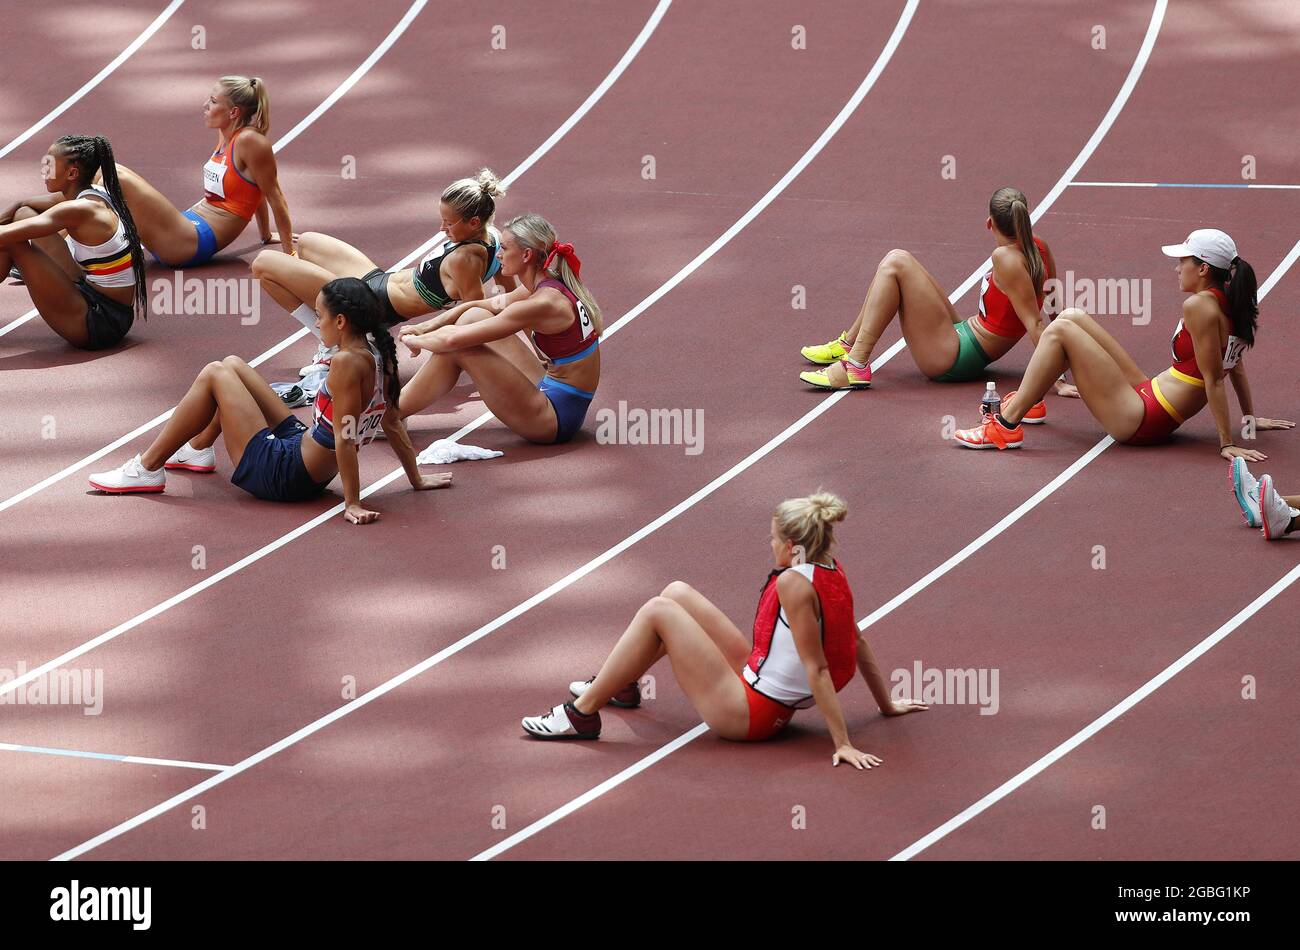 Tokio, Japan. August 2021. Die Teilnehmer des Frauen-Heptathlons entspannen sich auf der Strecke während der Aufwärmphase für das Hochsprung-Event beim Leichtathletik-Wettbewerb während der Olympischen Sommerspiele in Tokio, Japan, am Mittwoch, den 4. August 2021. Foto von Bob Strong/UPI Credit: UPI/Alamy Live News Stockfoto